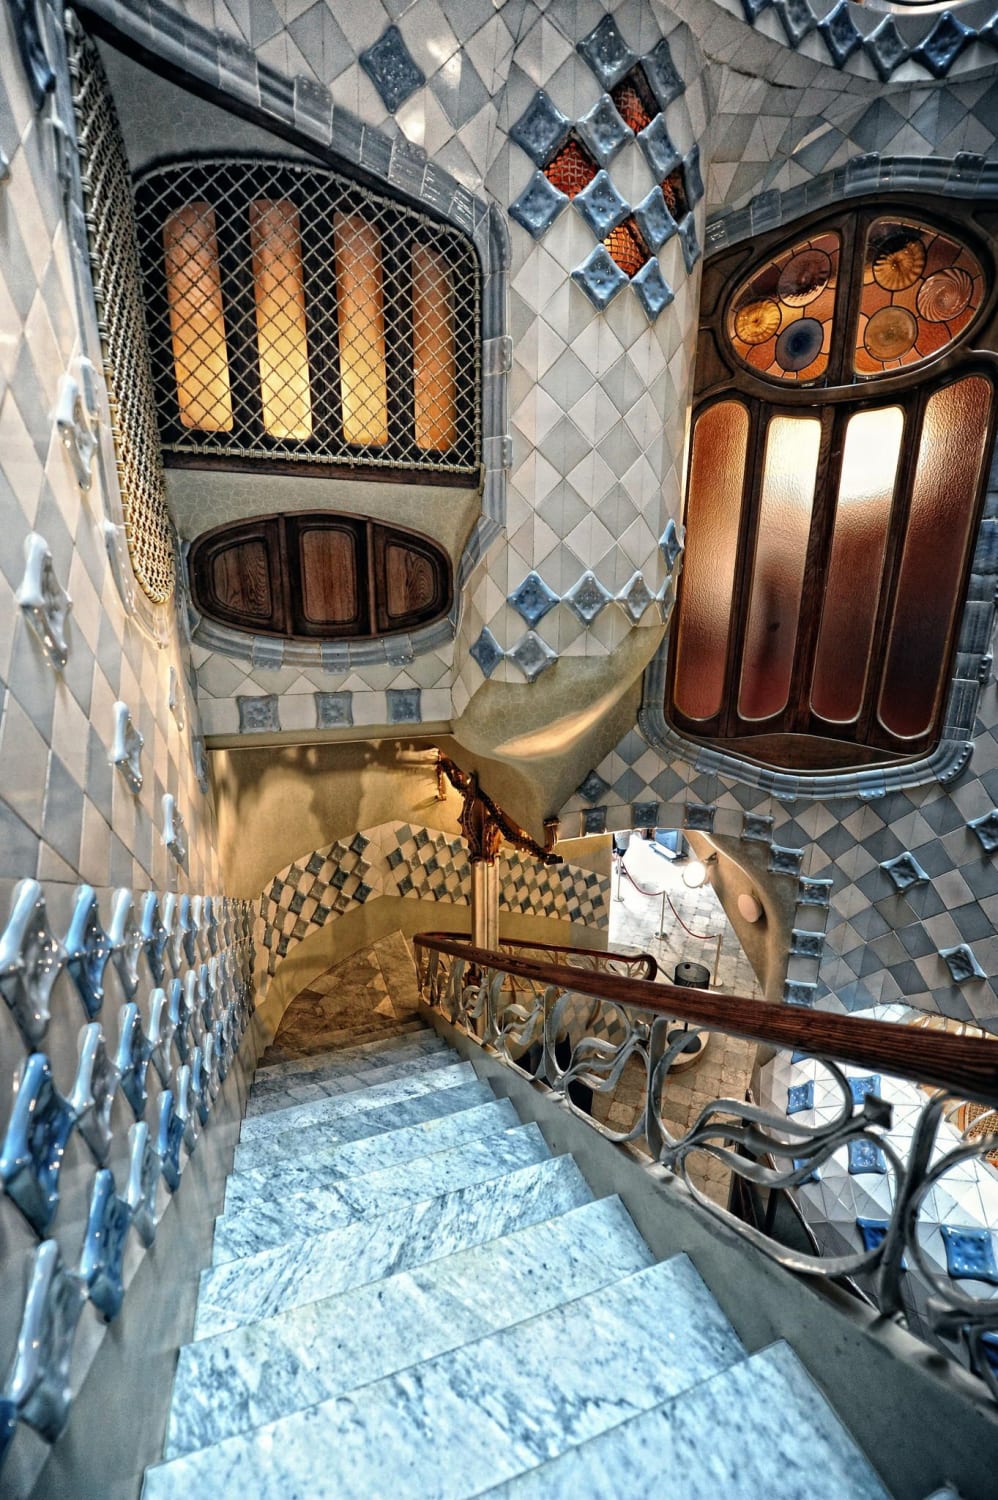 Casa batlló staircase, by Antoni Gaudí. Barcelona, Spain.